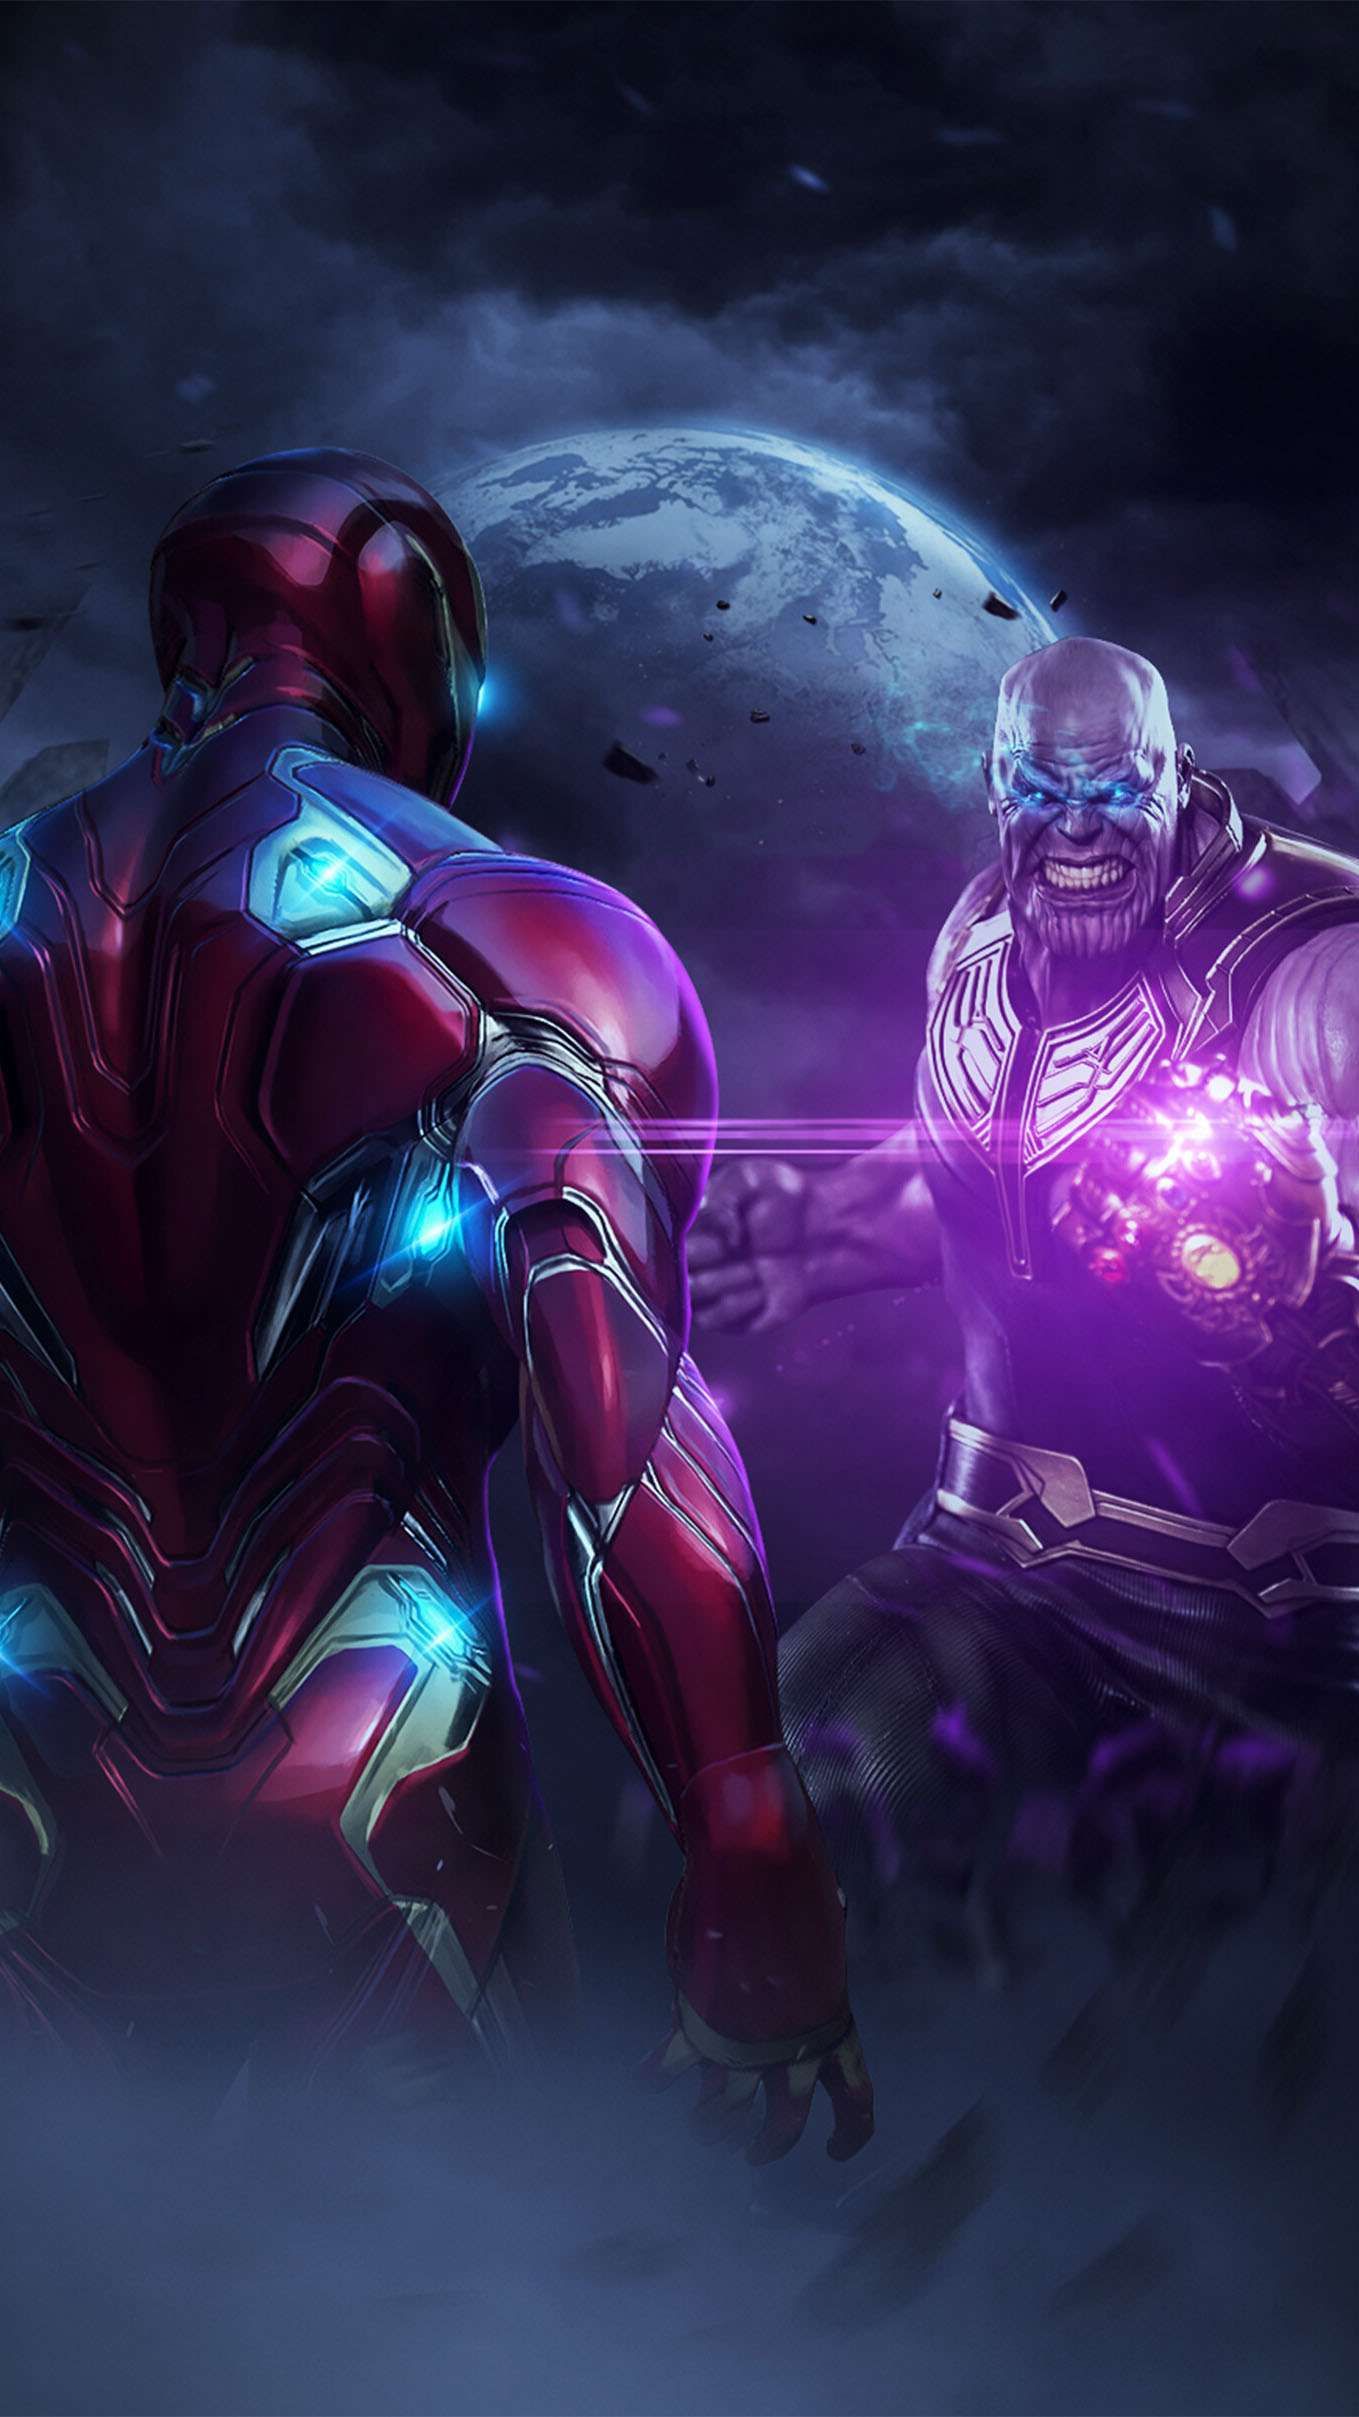 Iron Man Vs Thanos Endgame IPhone Wallpaper. Iron man avengers, Iron man wallpaper, Iron man HD wallpaper